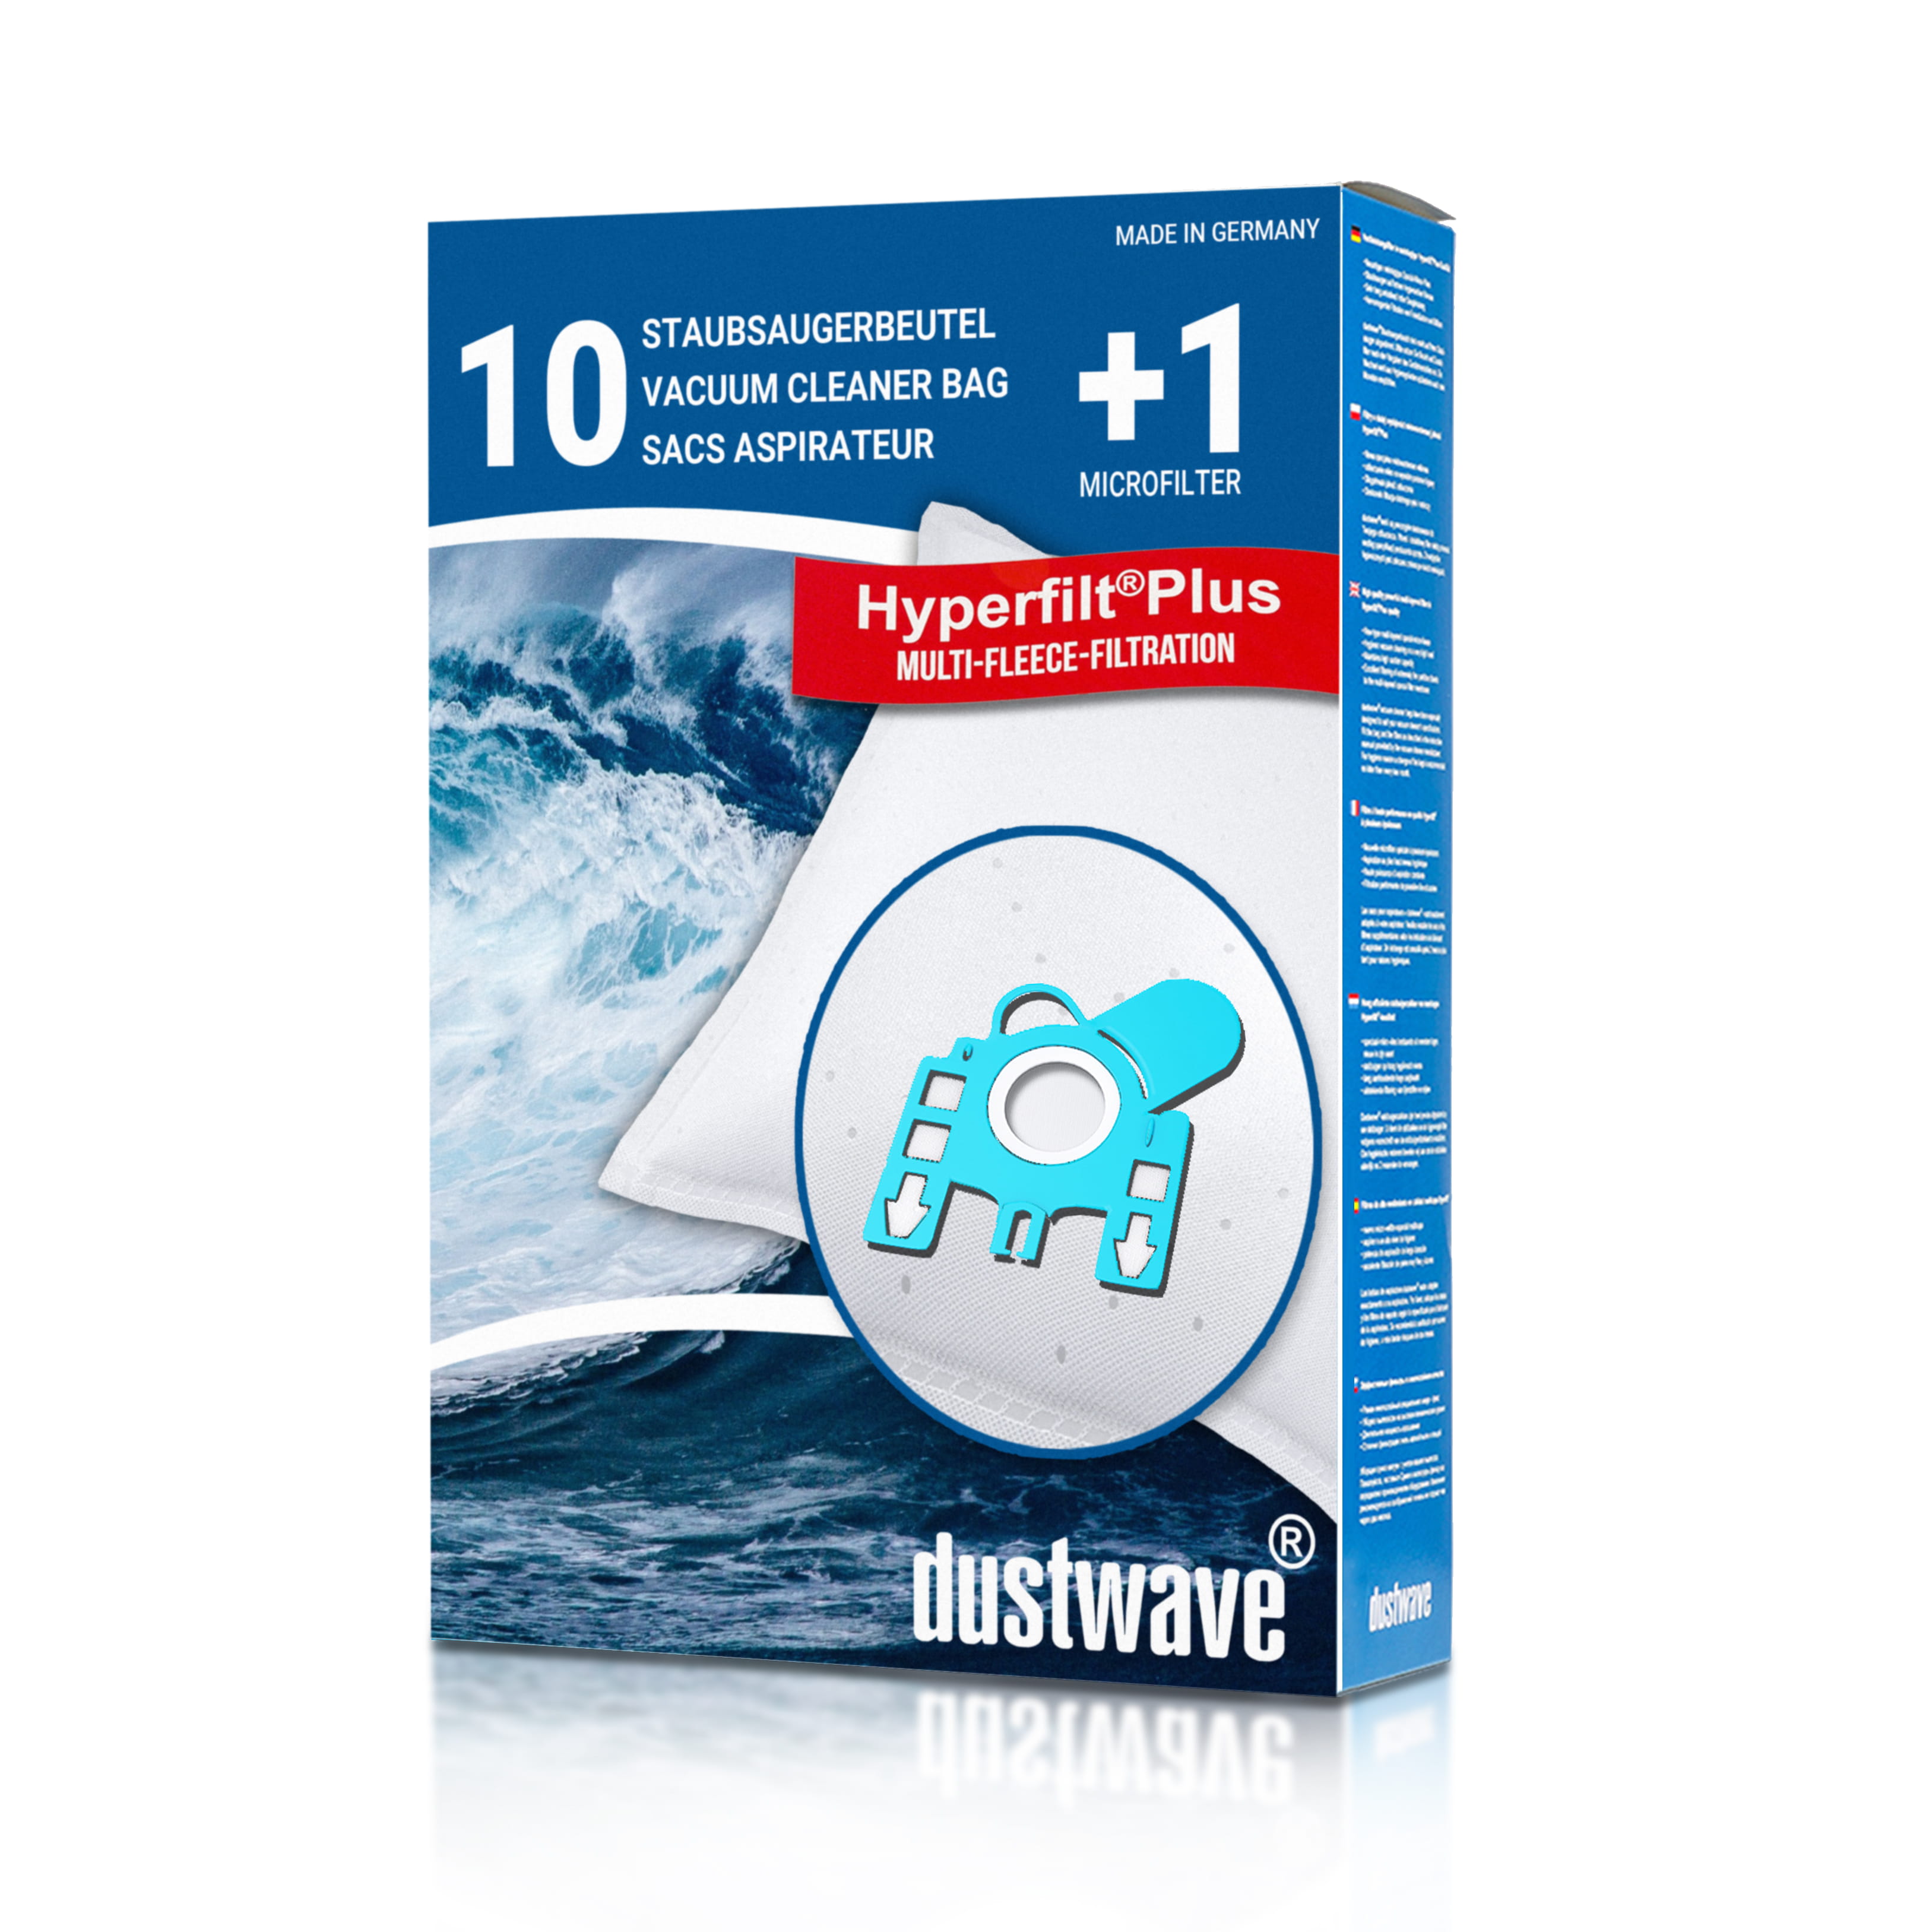 Dustwave® 10 Staubsaugerbeutel für Hoover ATC18LI001 - hocheffizient, mehrlagiges Mikrovlies mit Hygieneverschluss - Made in Germany